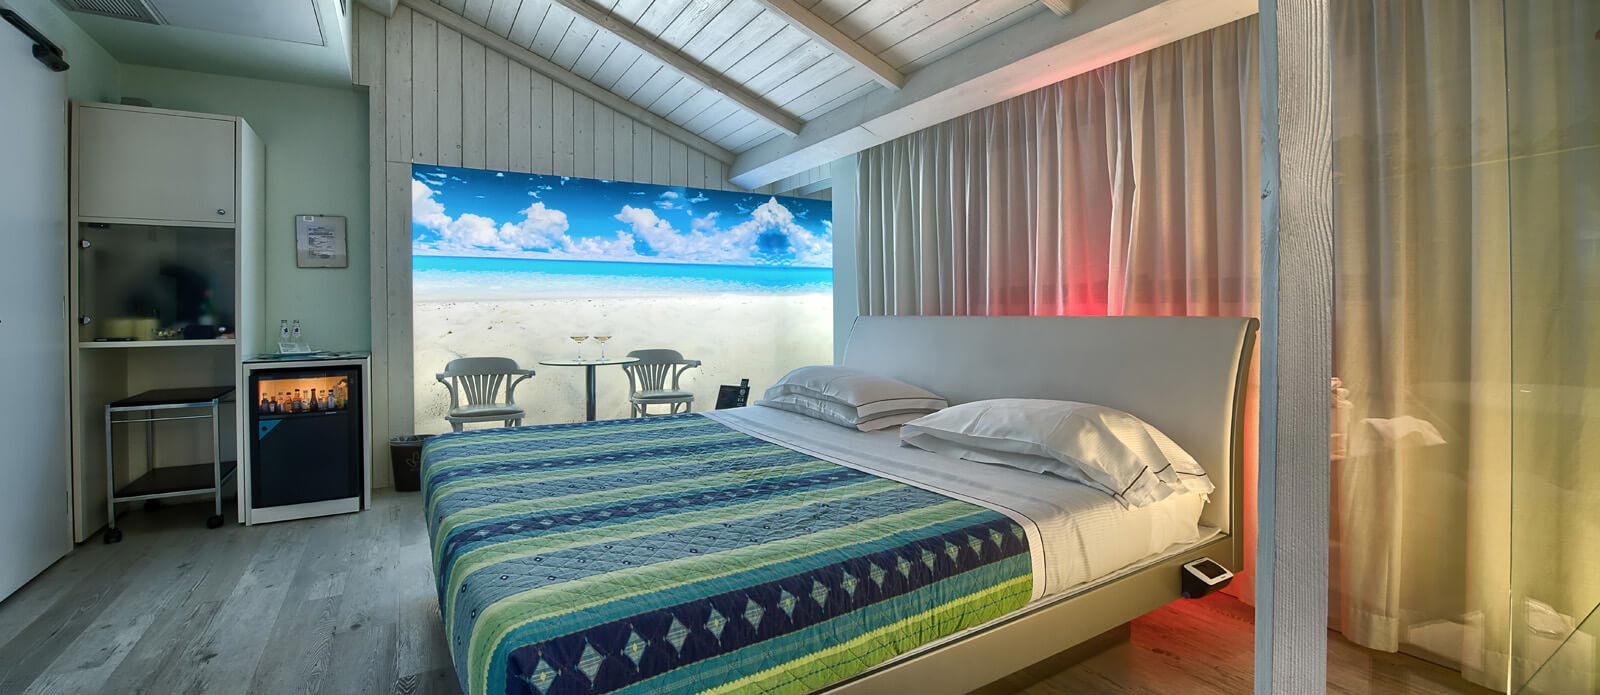 Motel K Senior Suite Punta Blanca vista su letto matrimoniale in riva alla spiaggia, cromoterapia, camera a tema tropicale 